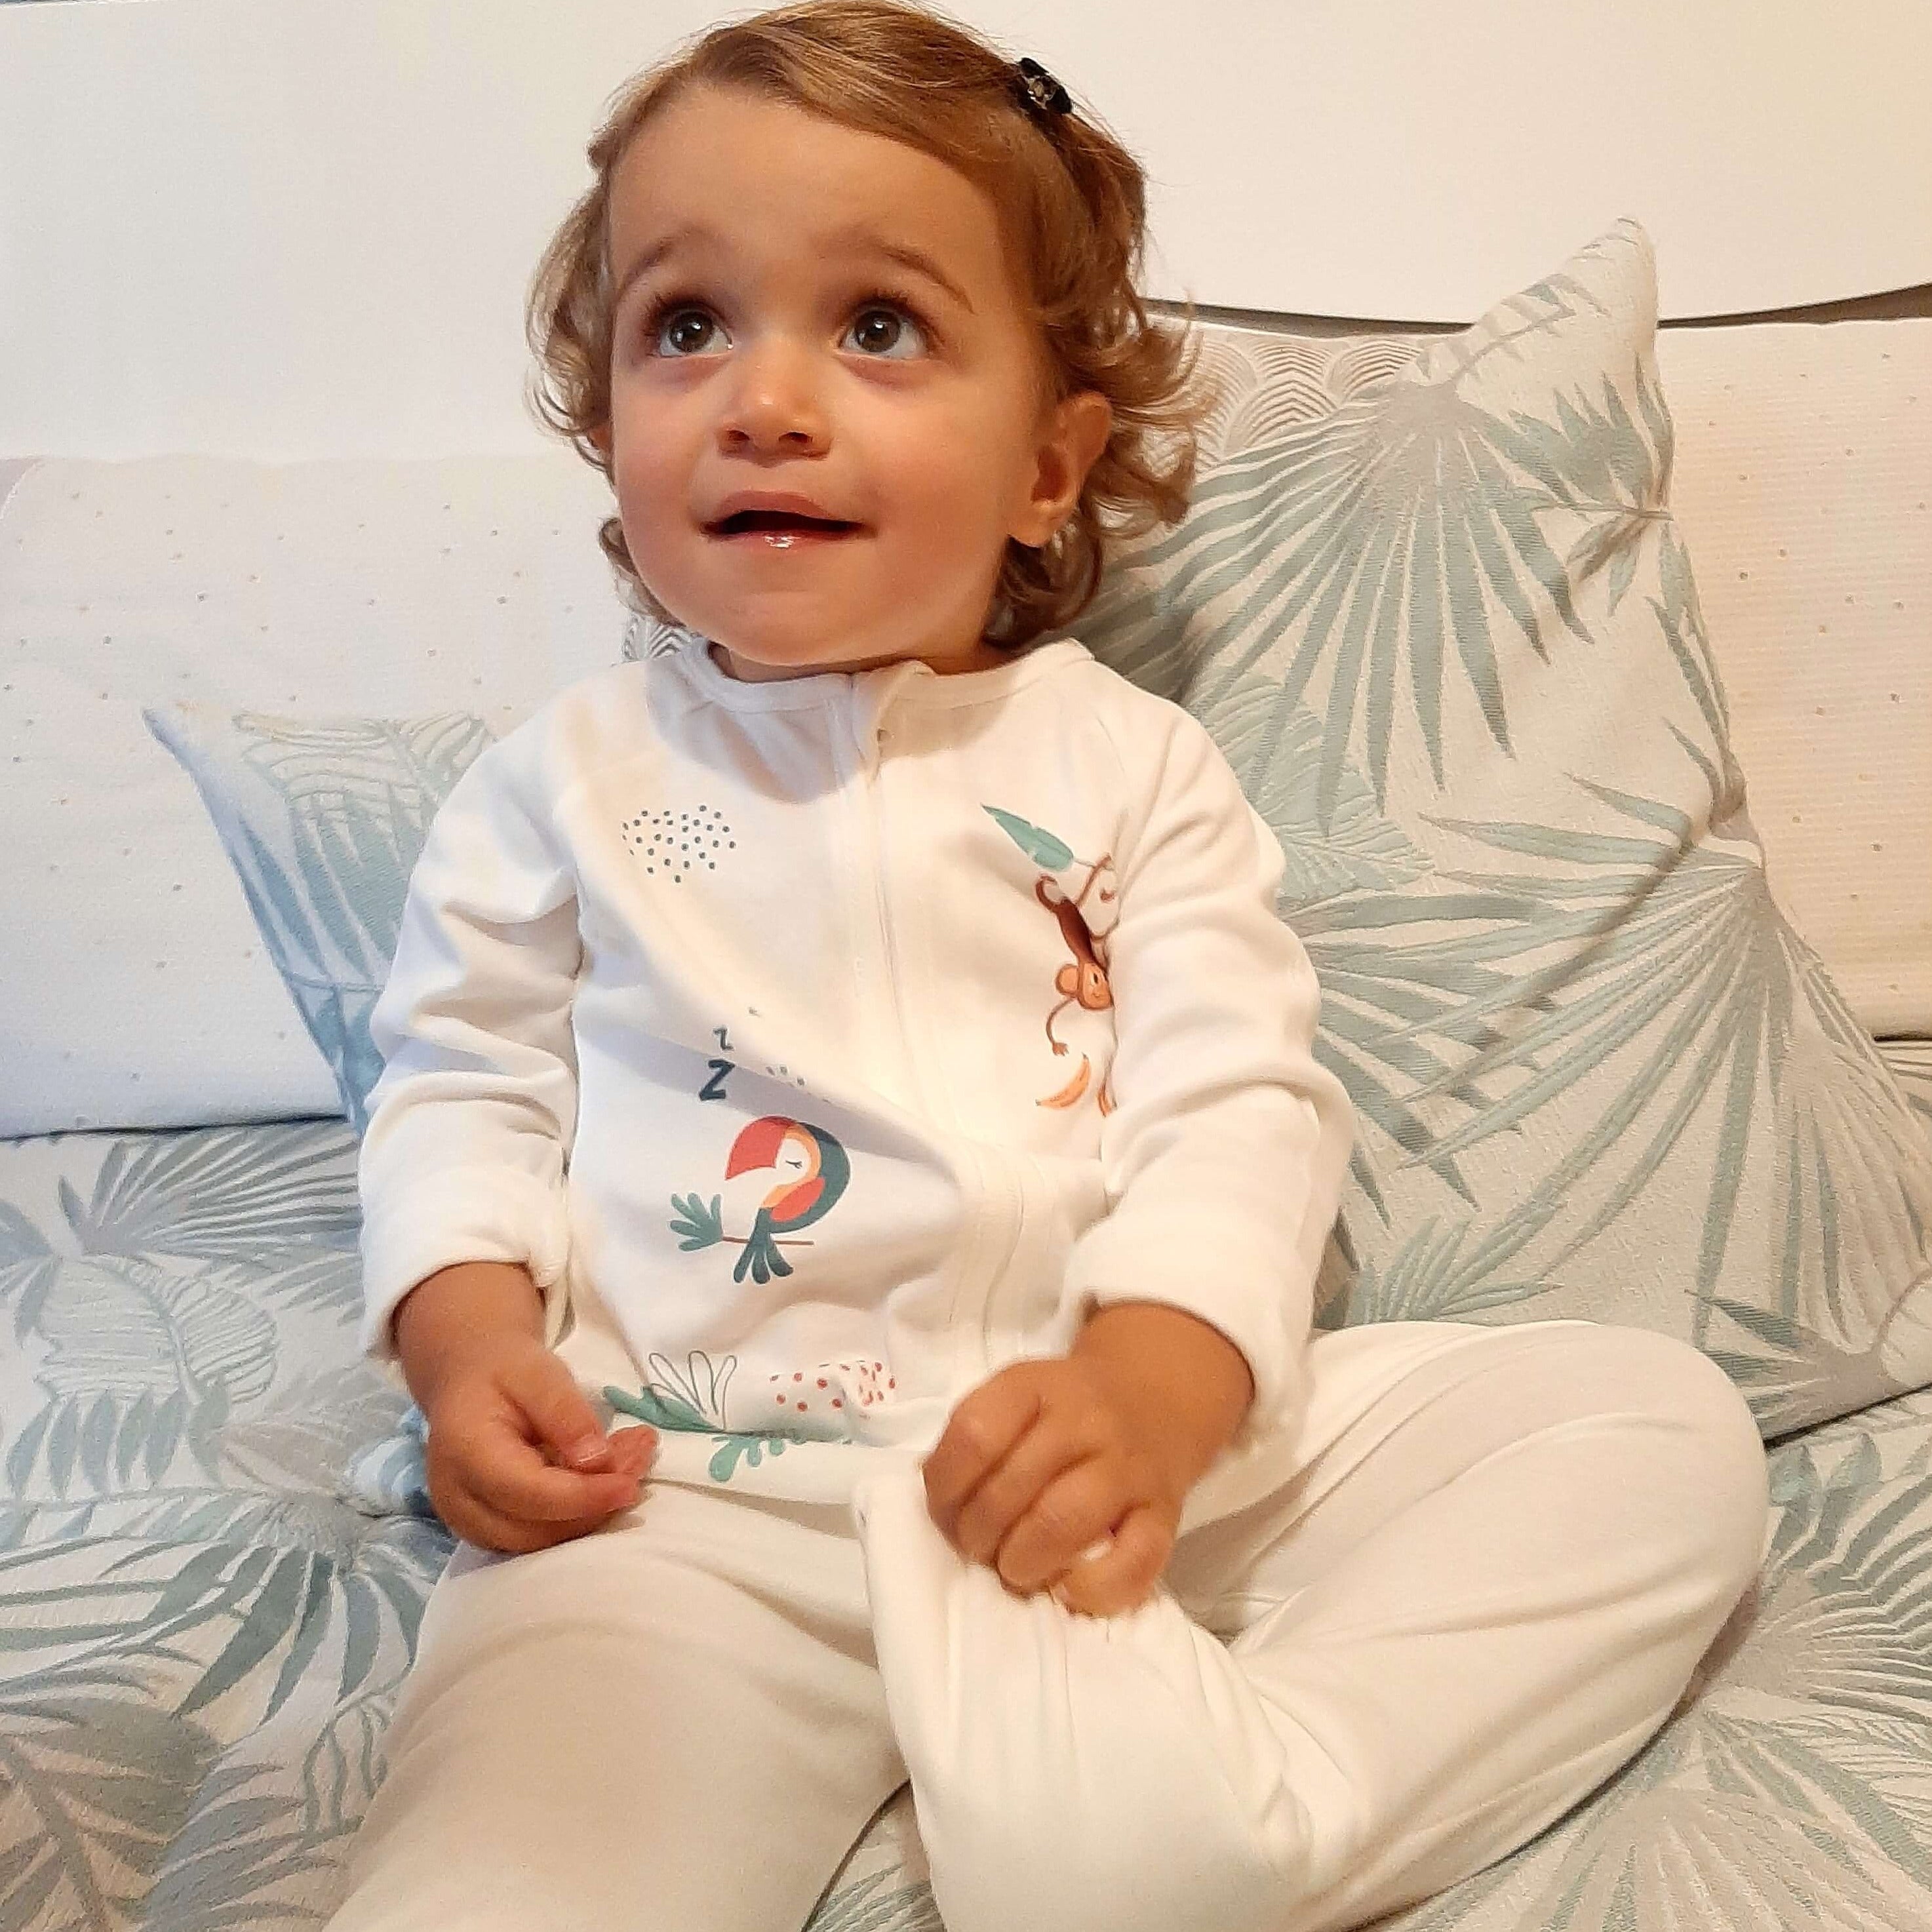 Pyjama zippé bébé et enfant coton bio